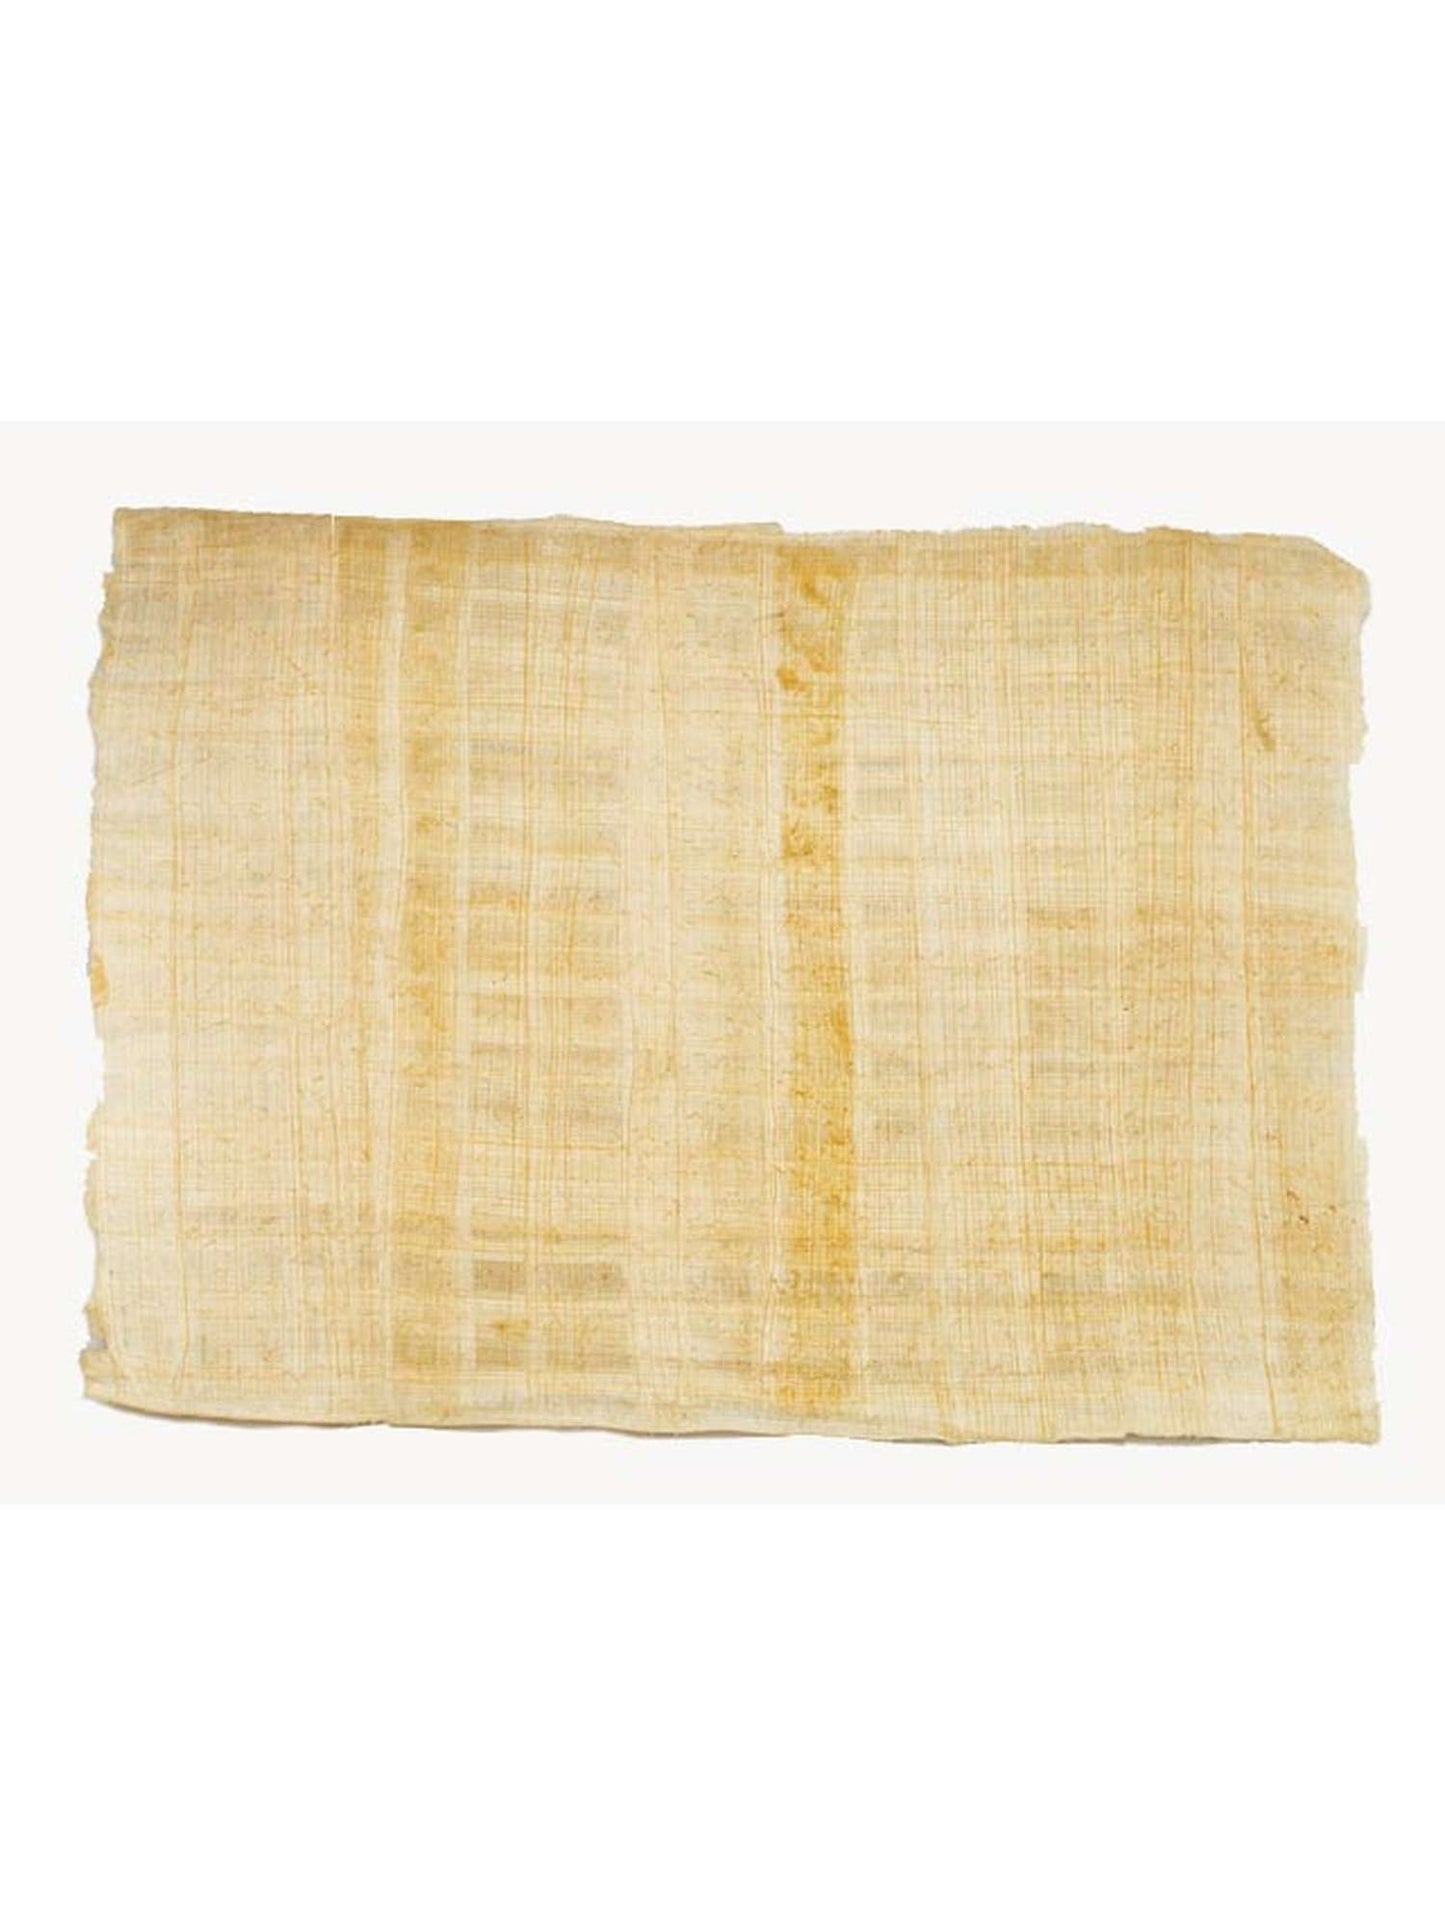 Hoja de Papiro 35x25 Bordes naturales